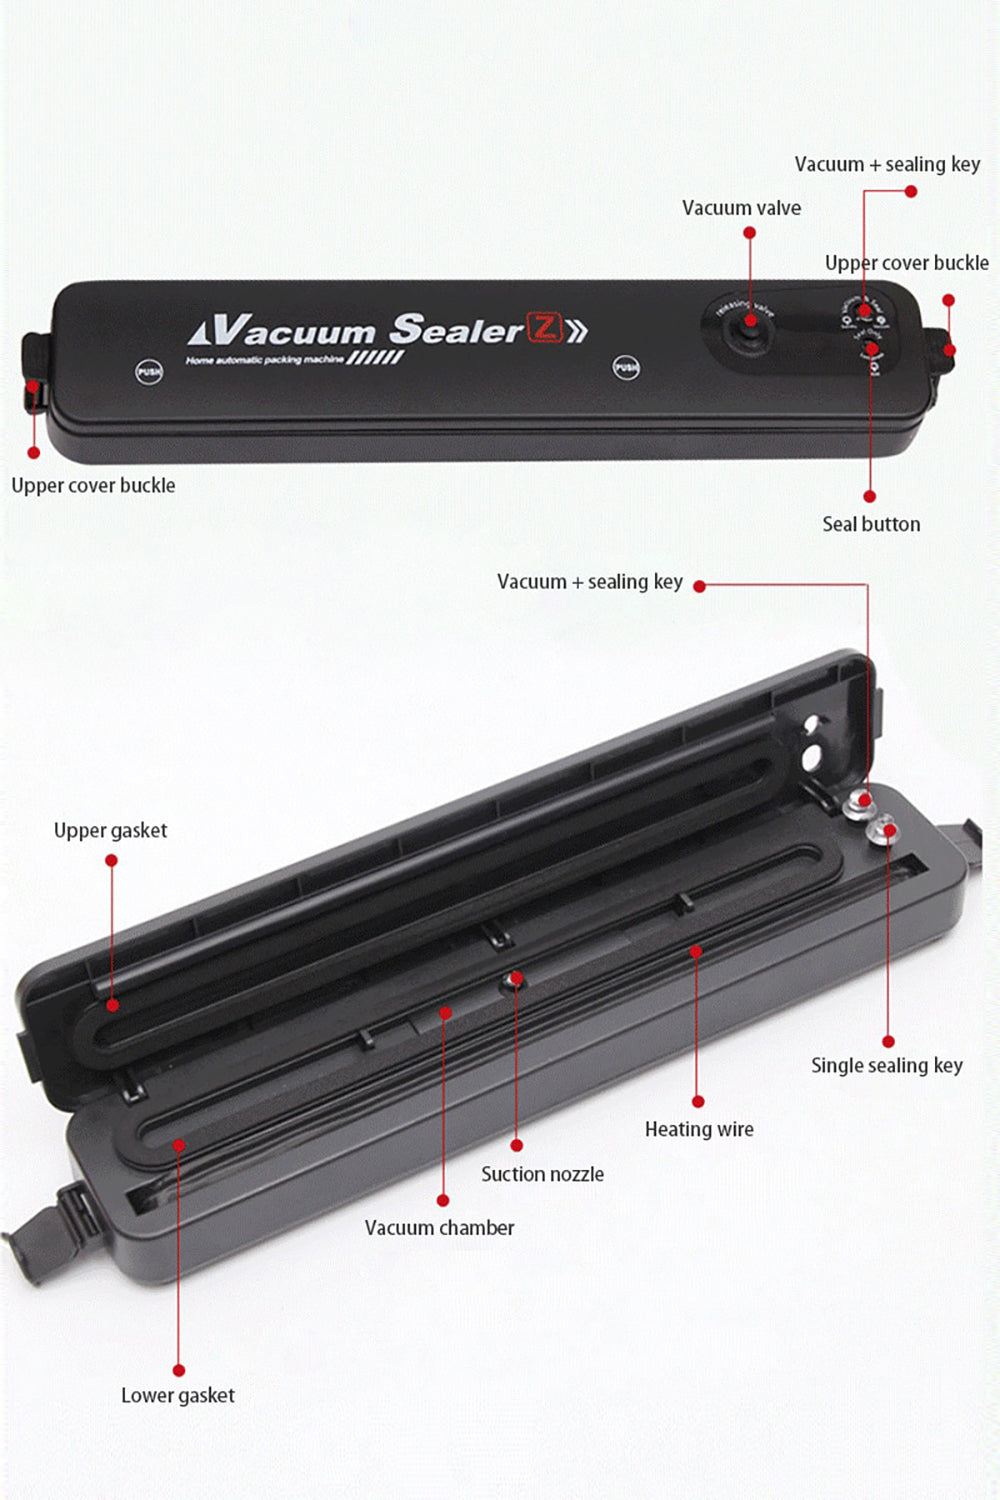 Household Food Vacuum Sealer Food Packaging Machine Film Sealer AU Plug Vacuum Packer Kichen Tool